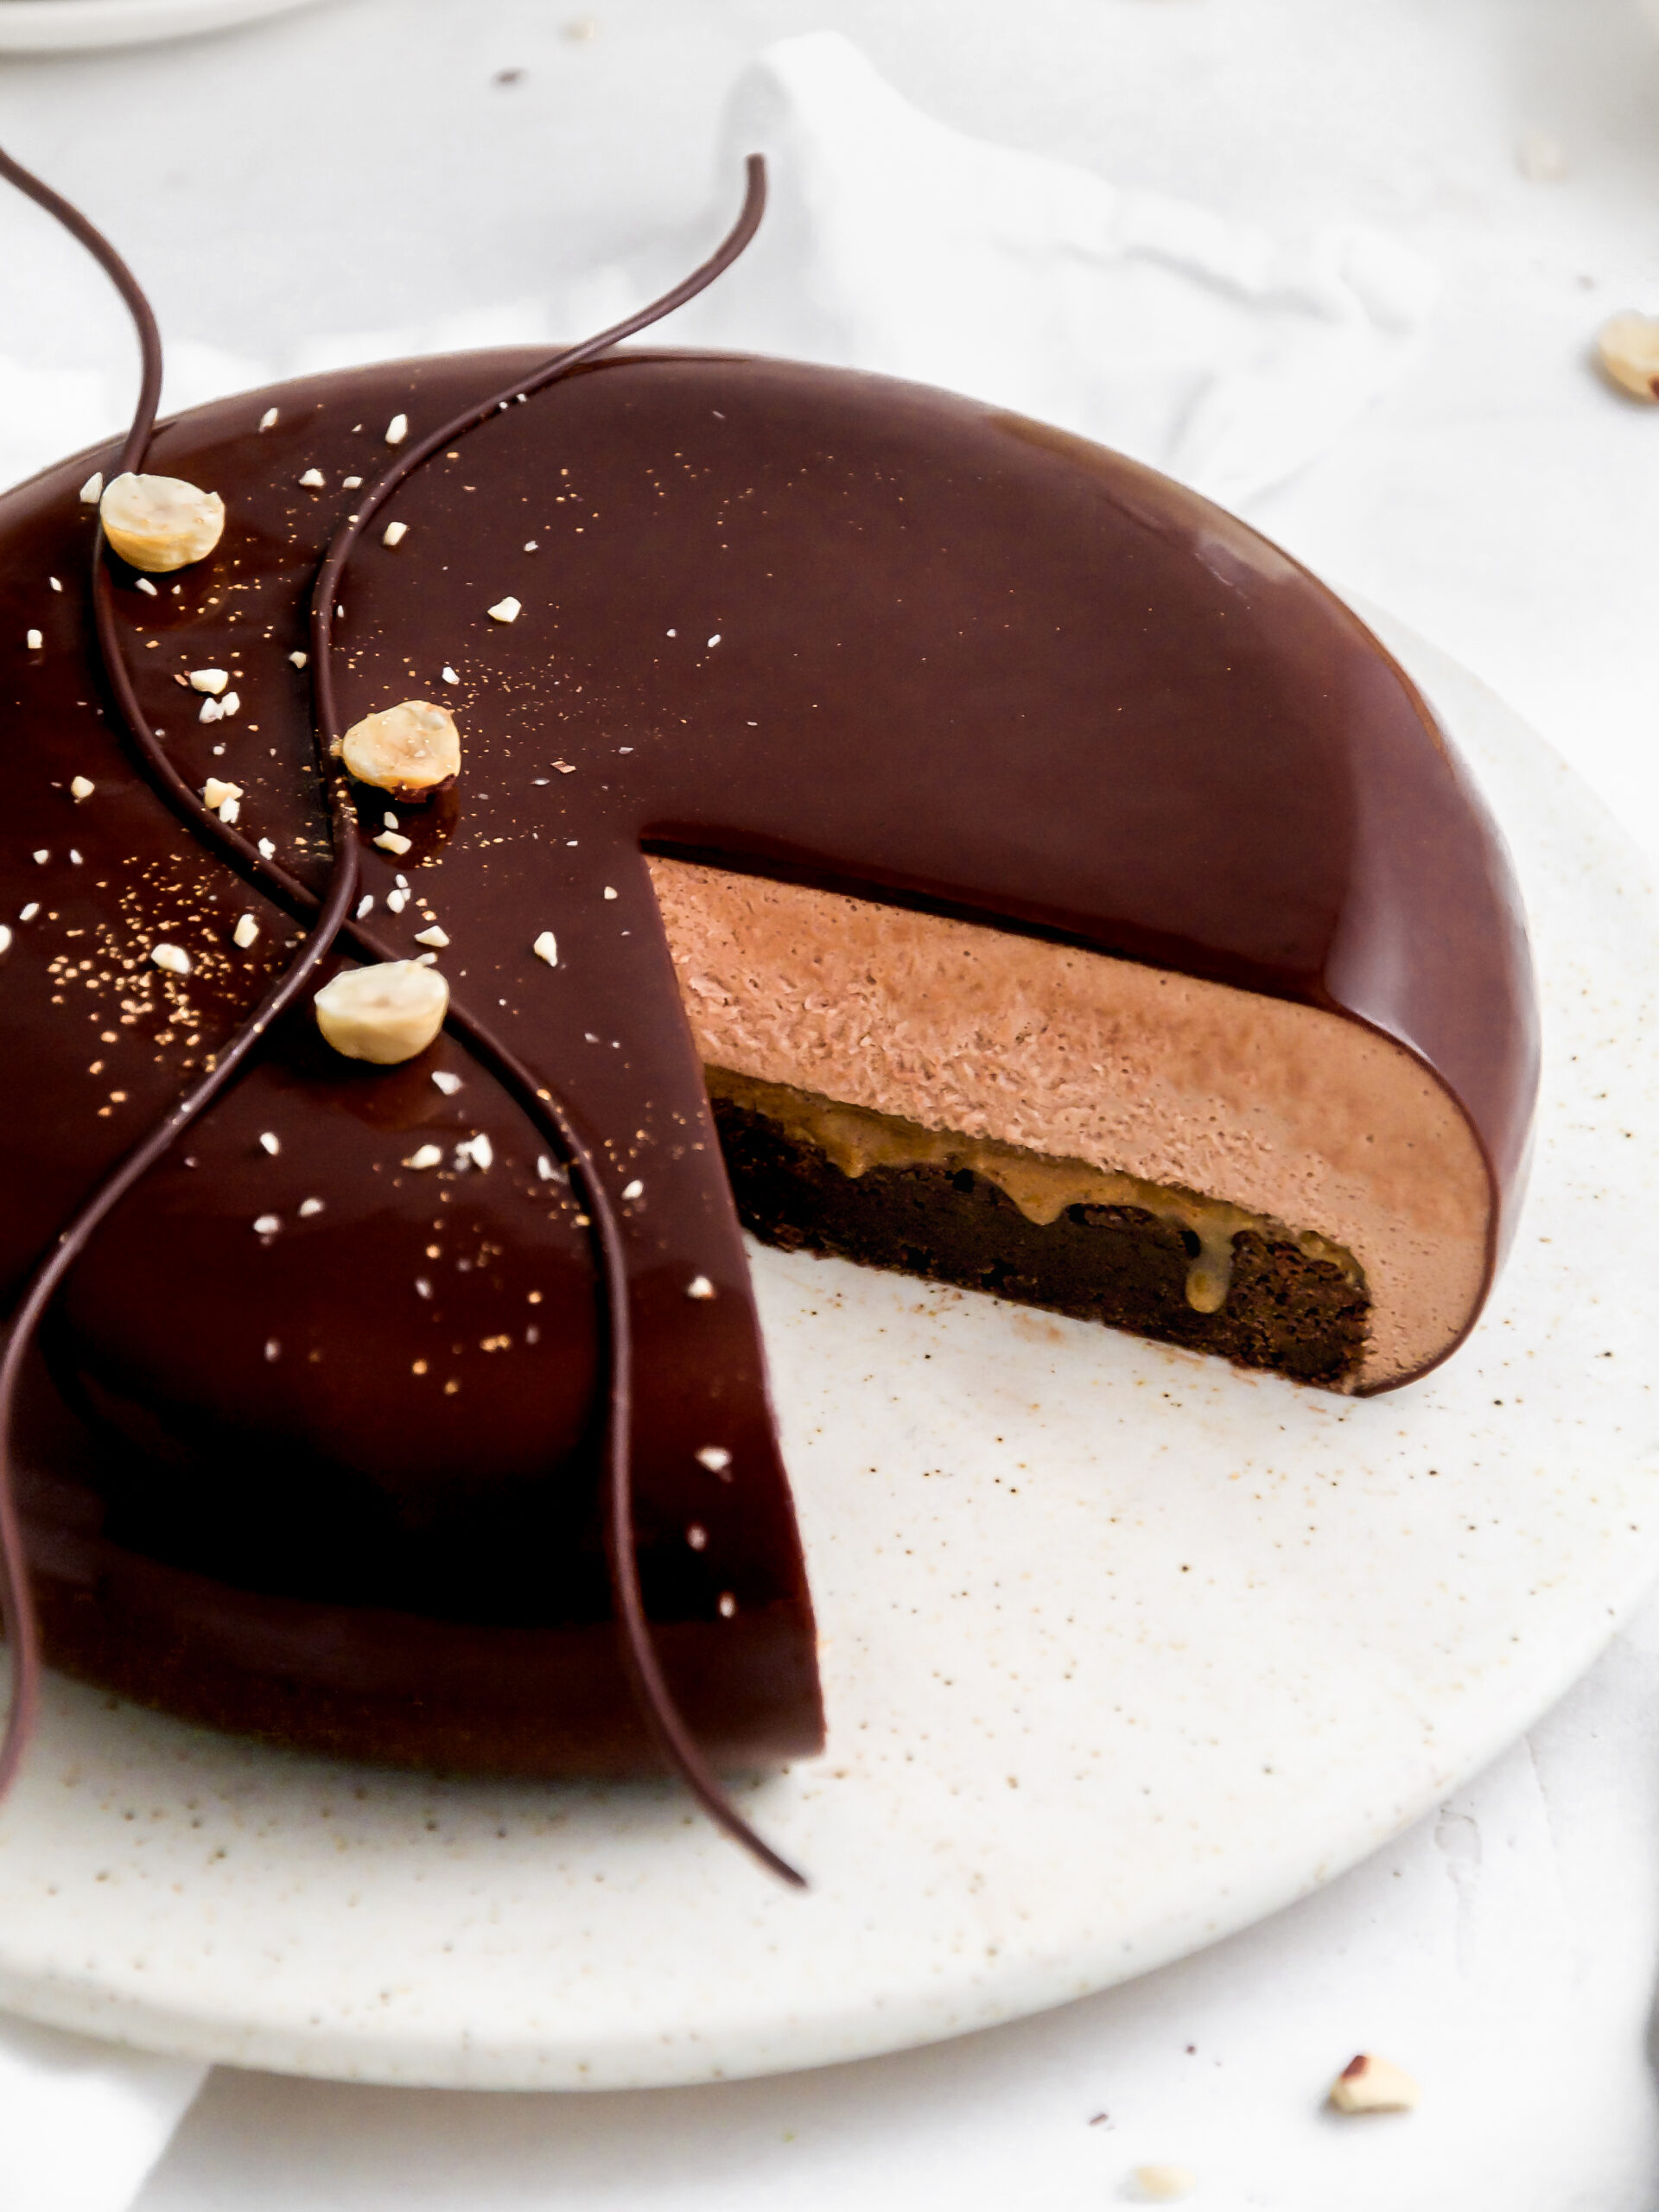 En skive skåret i brownie- og Nutella-moussekagen.